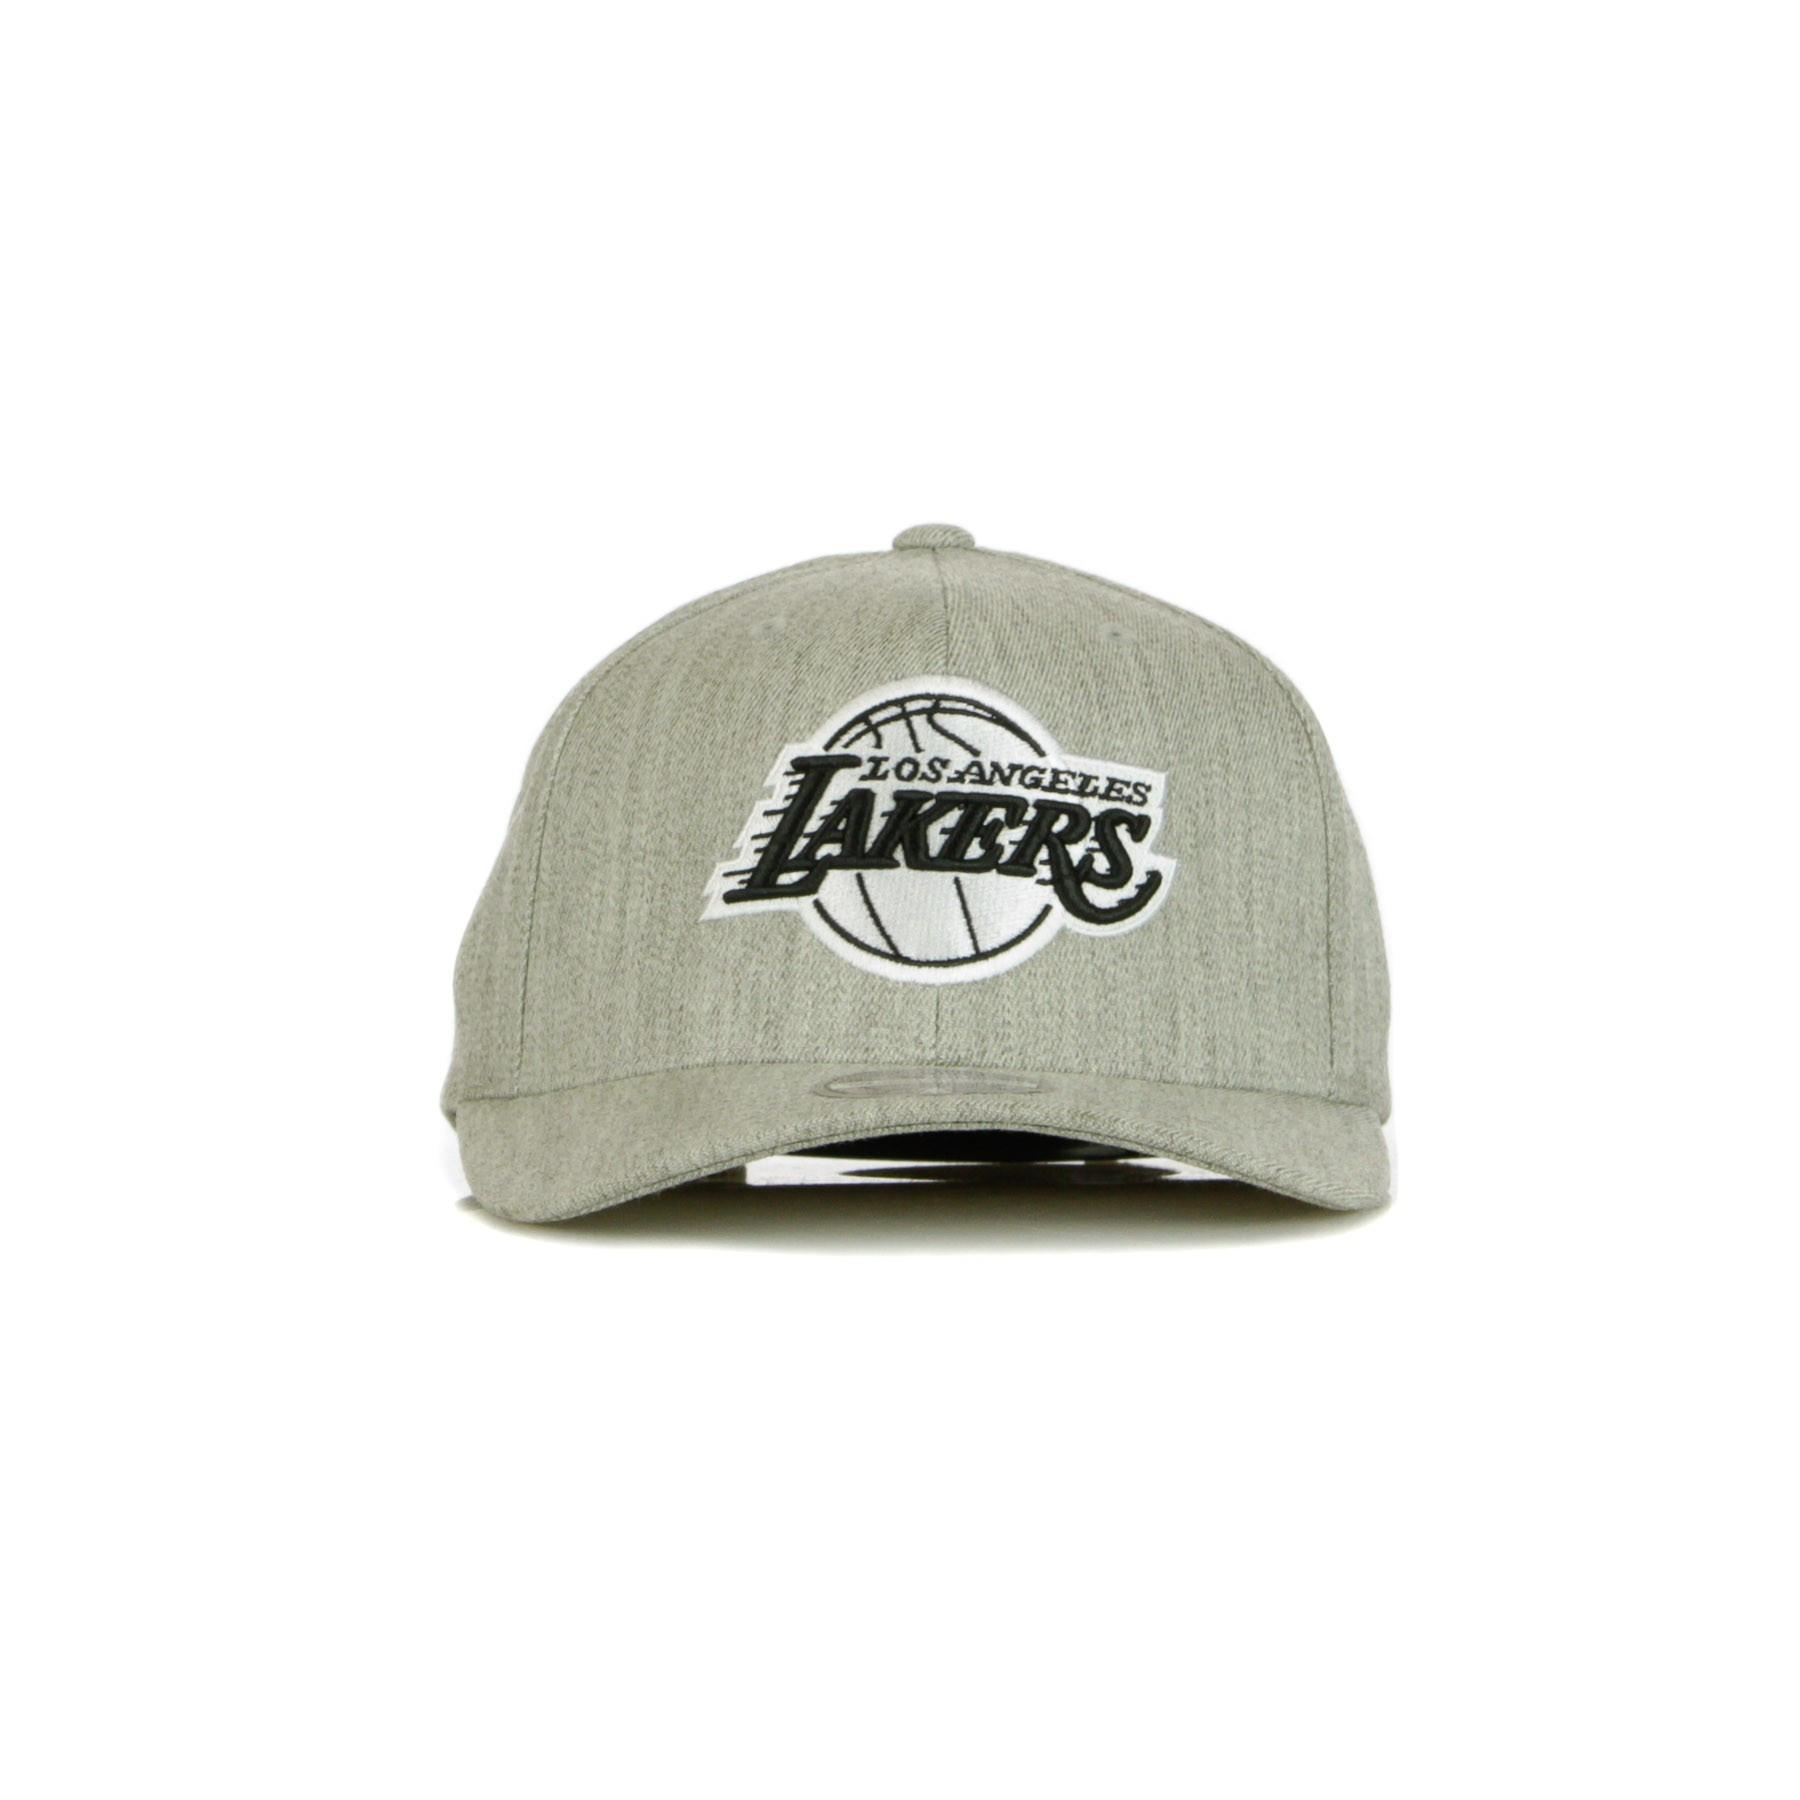 Pet Los Angeles Lakers blk/wht logo 110